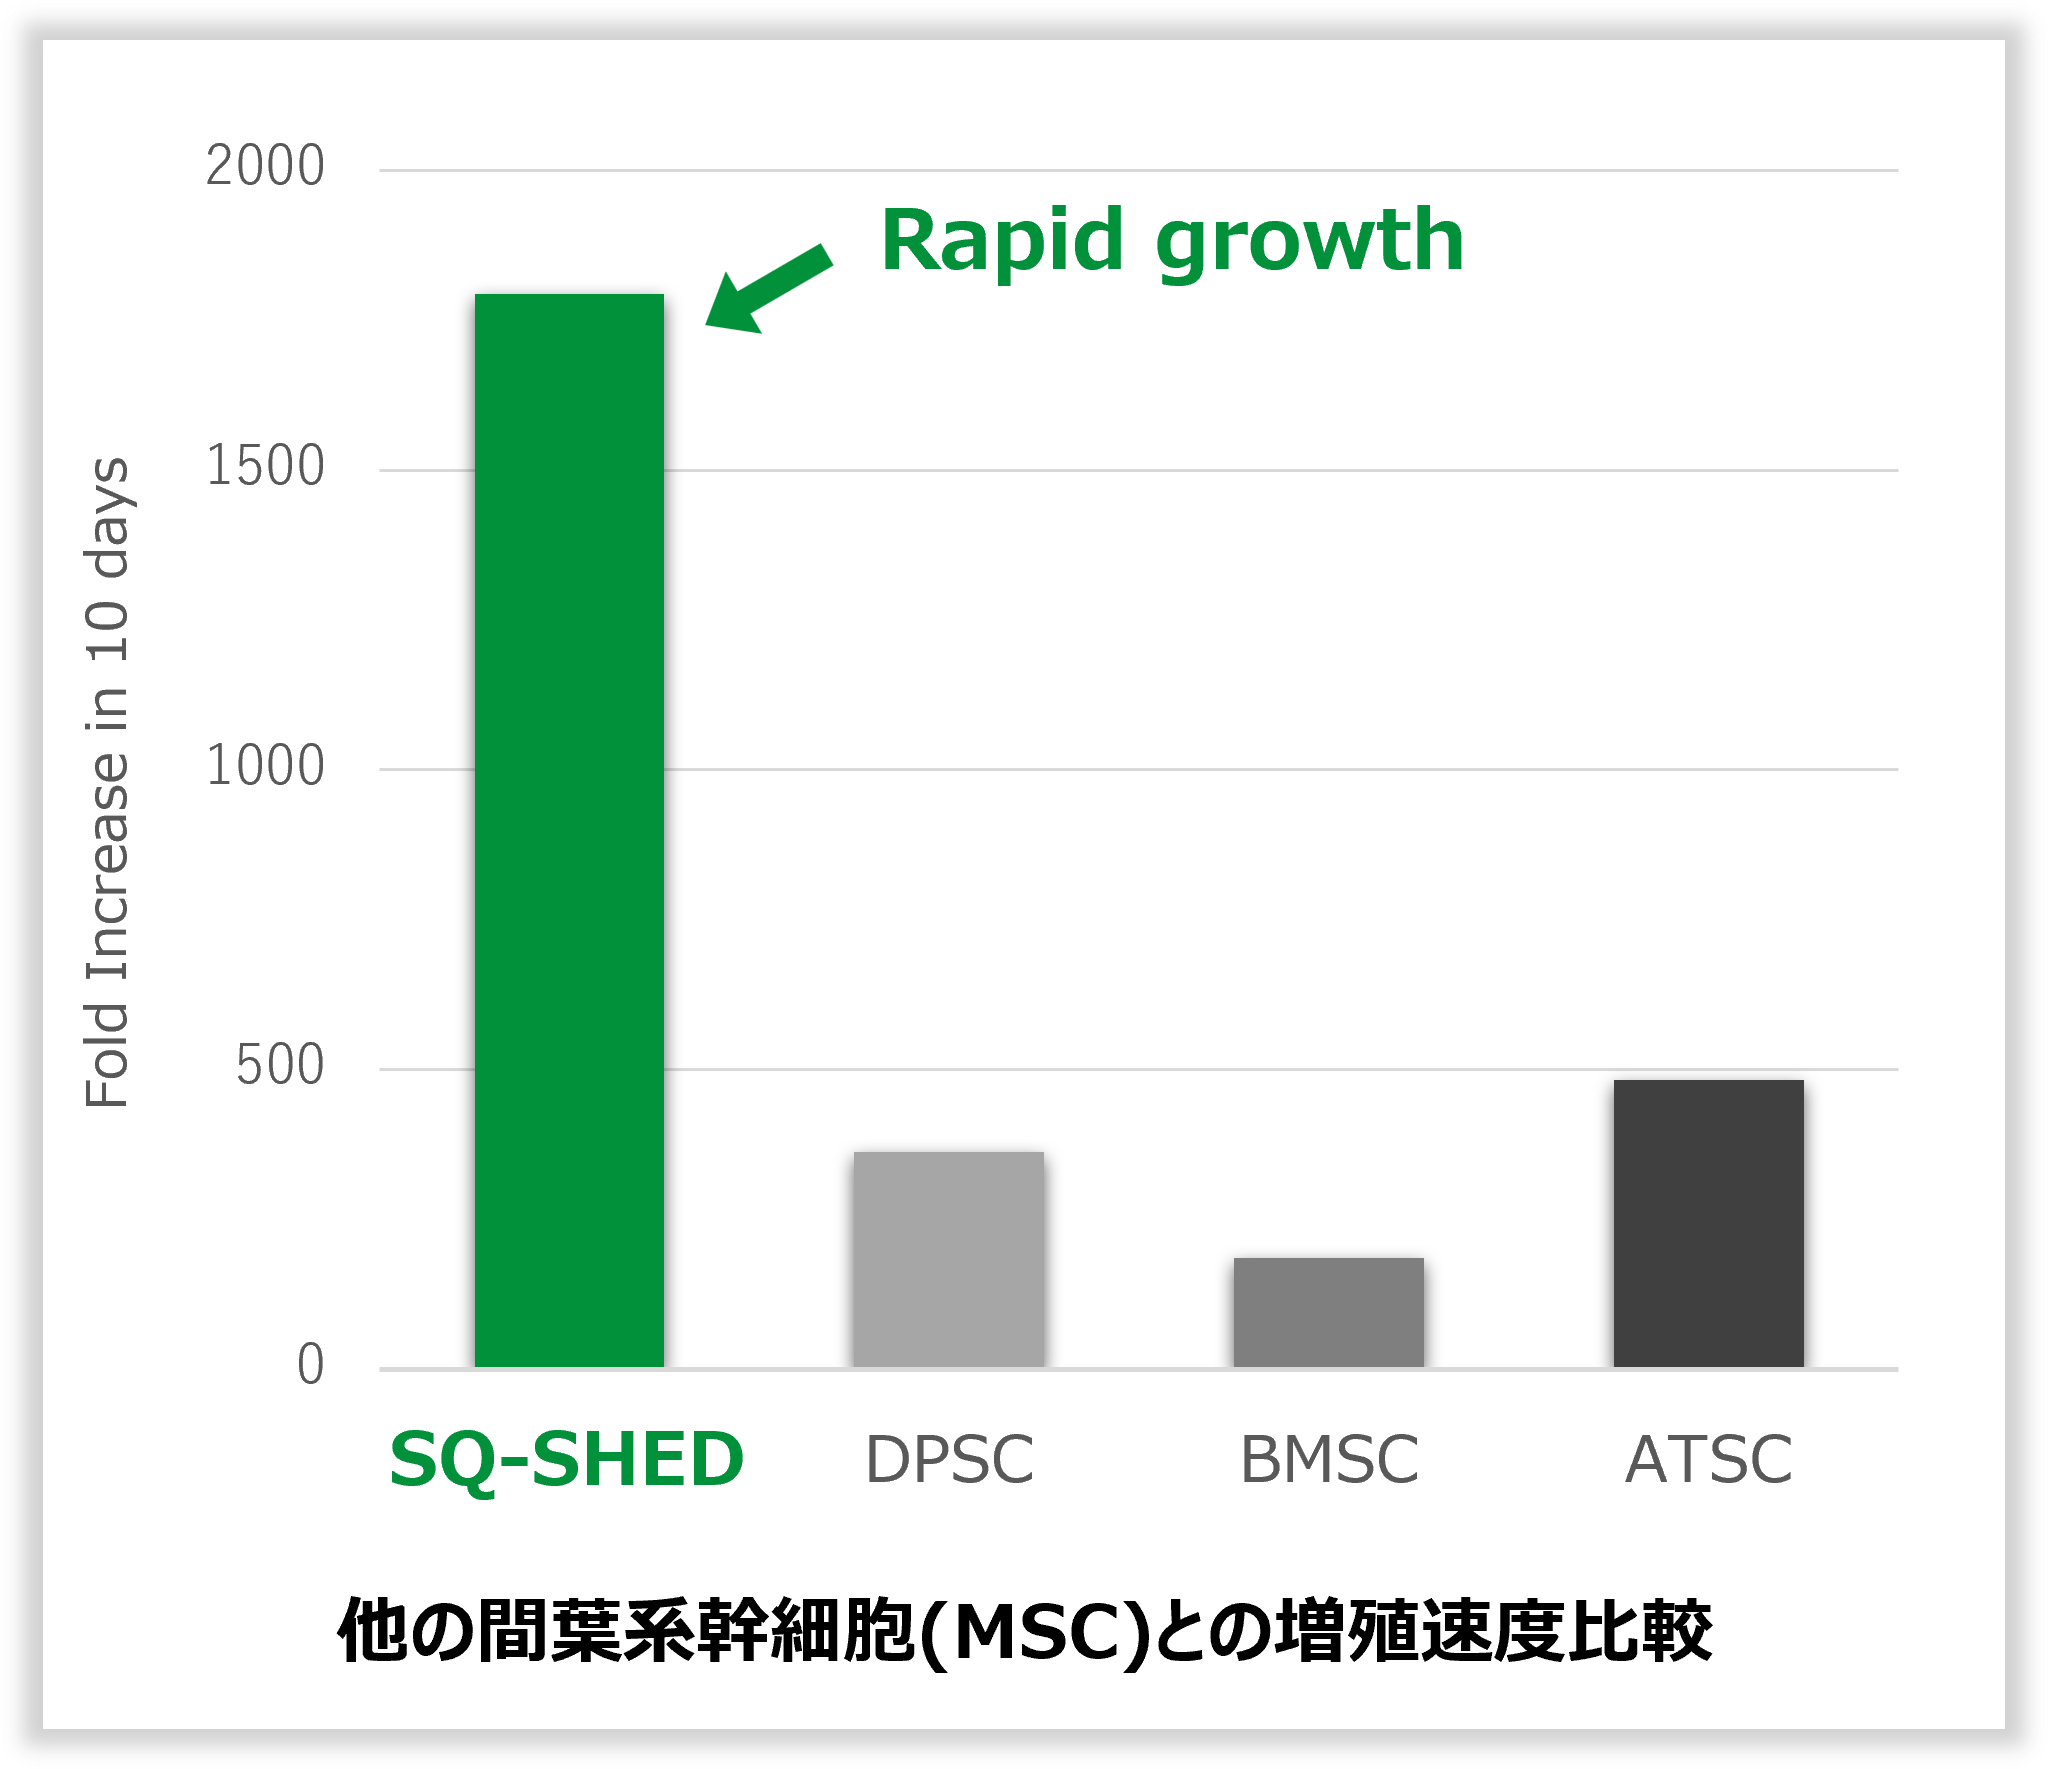 他のMSCとの増殖速度比較